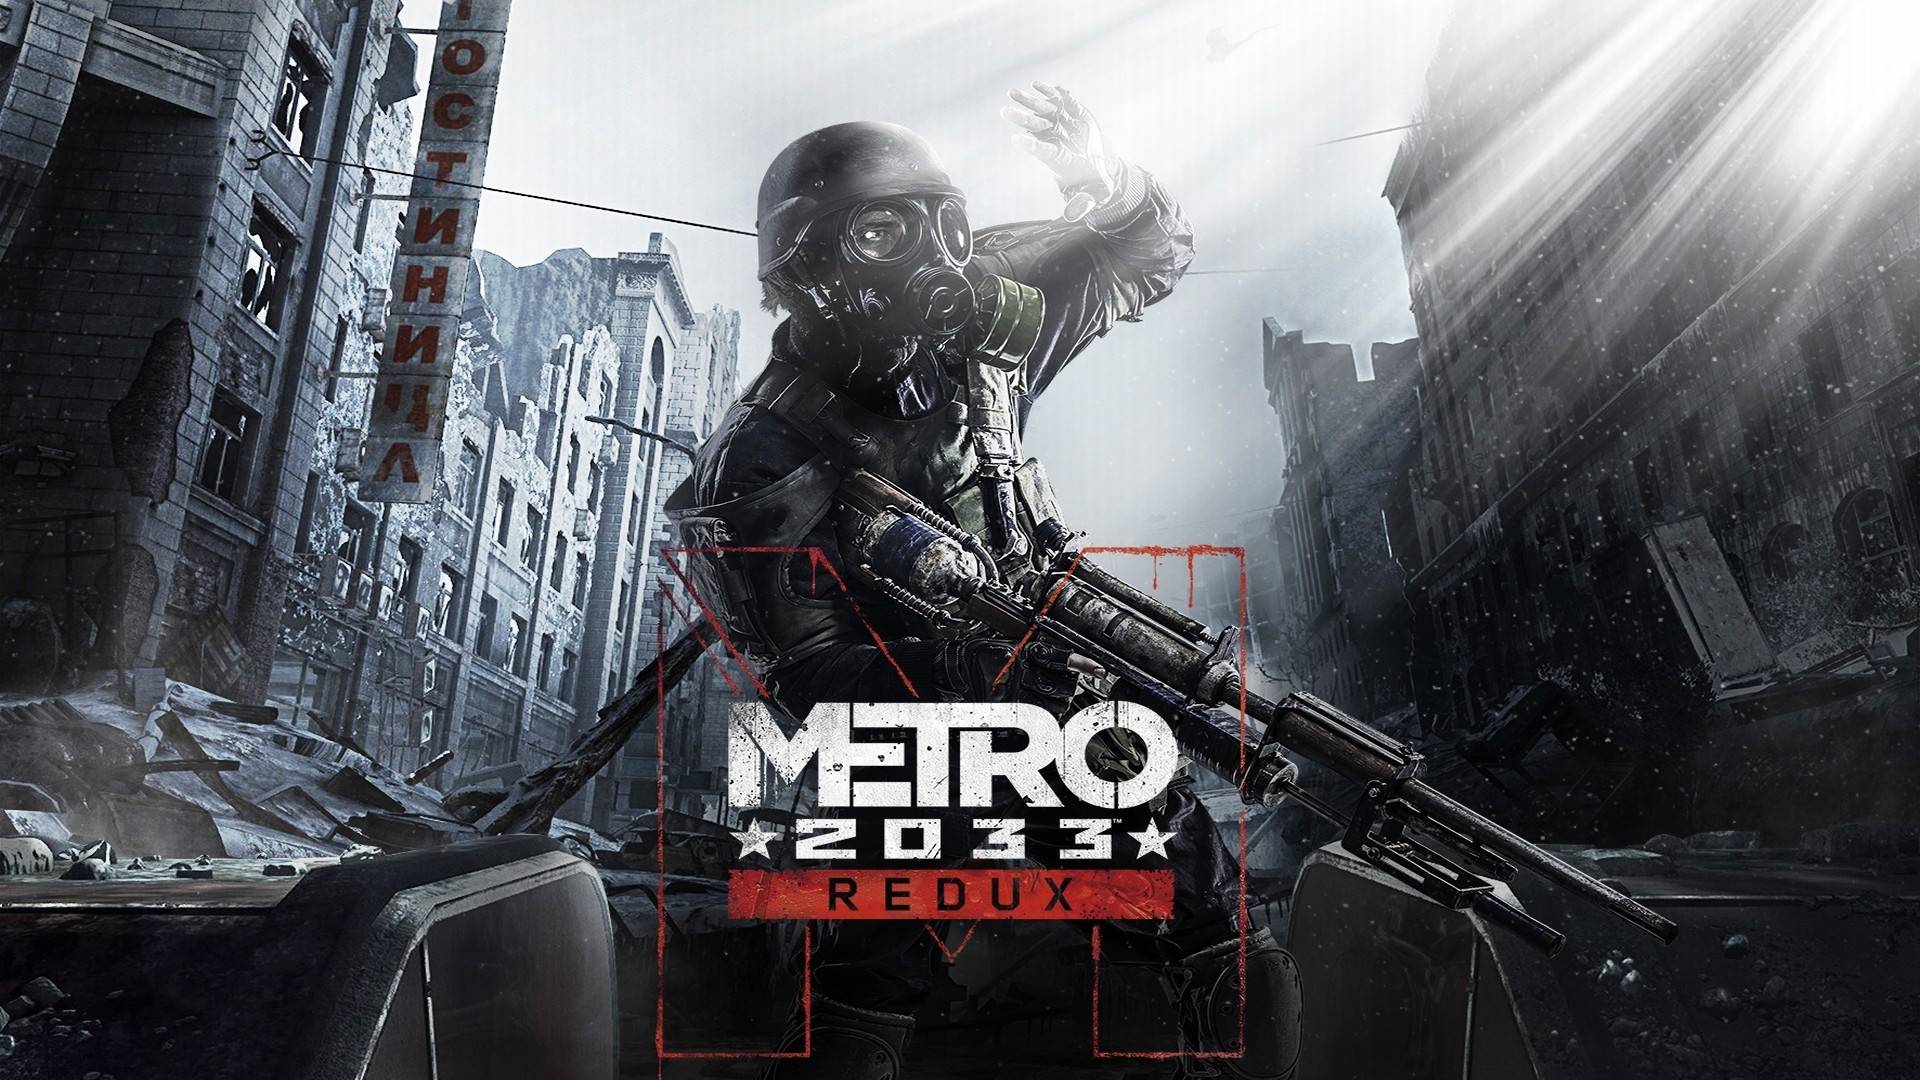 Стрим|Metro 2033 Redux | Прохождение |Часть 2|?Ready to Game?